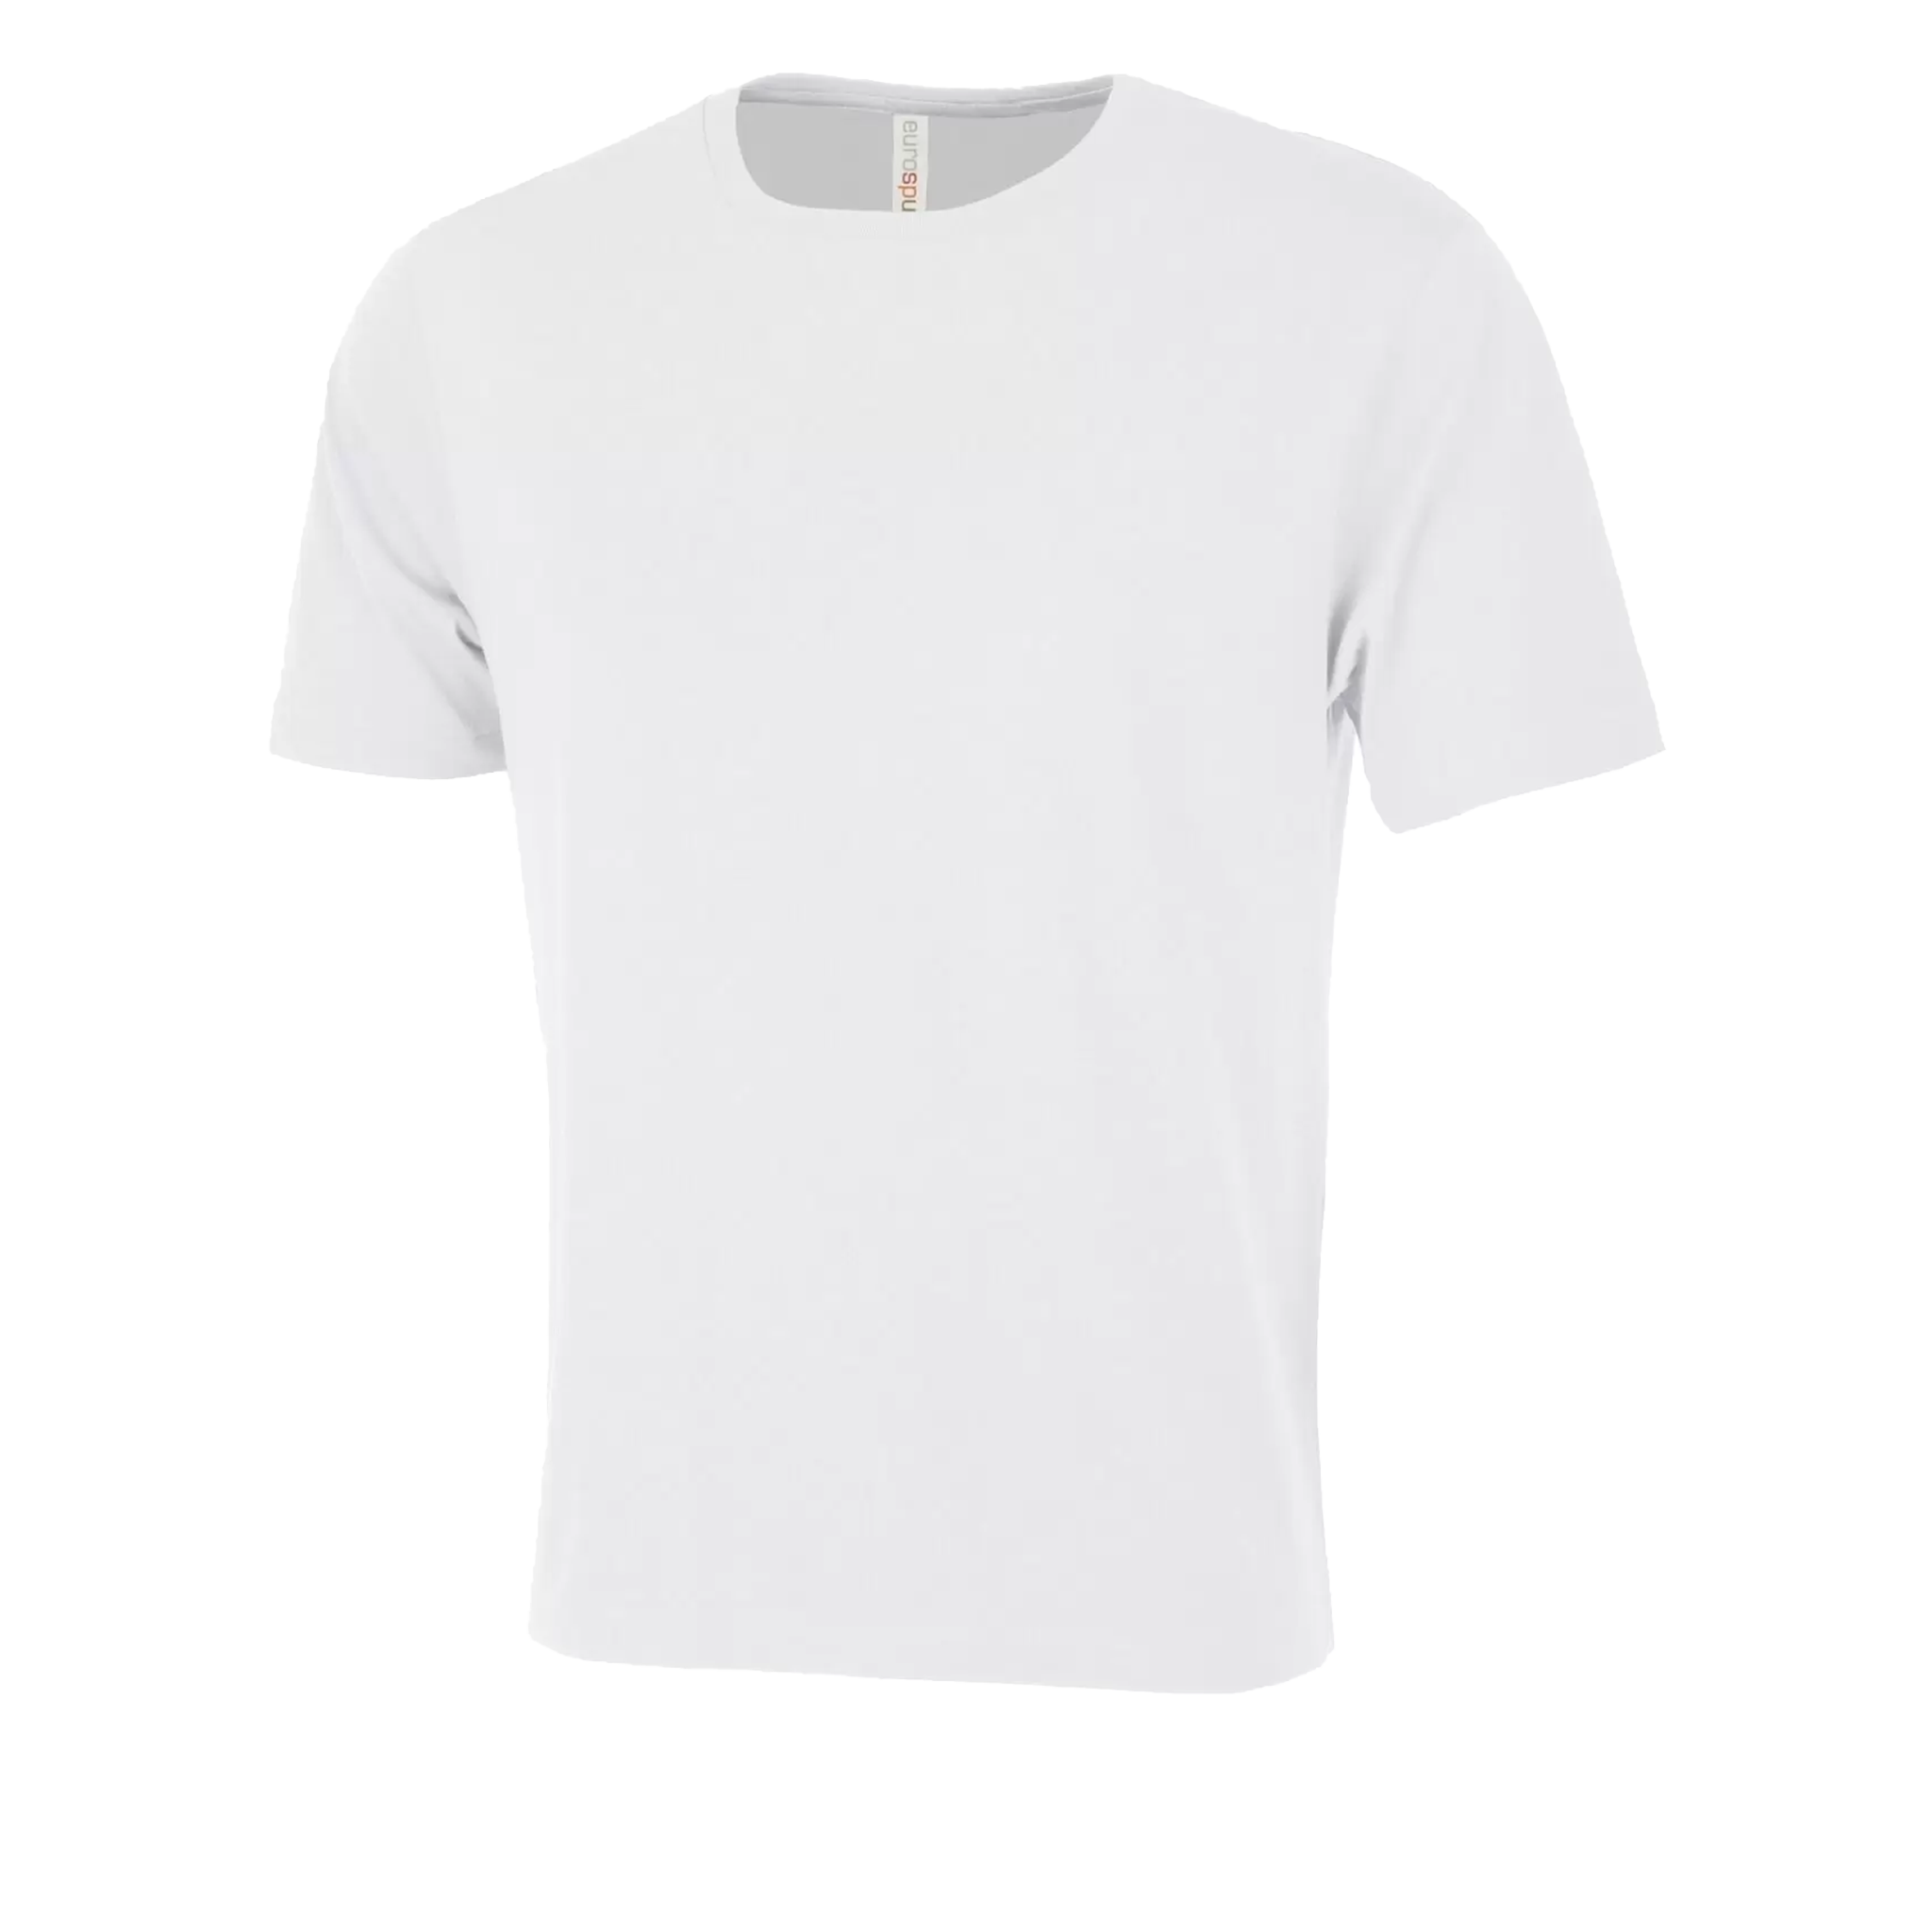 ATC Eurospun Ring Spun T-Shirt - Men's Sizing XS-4XL - White